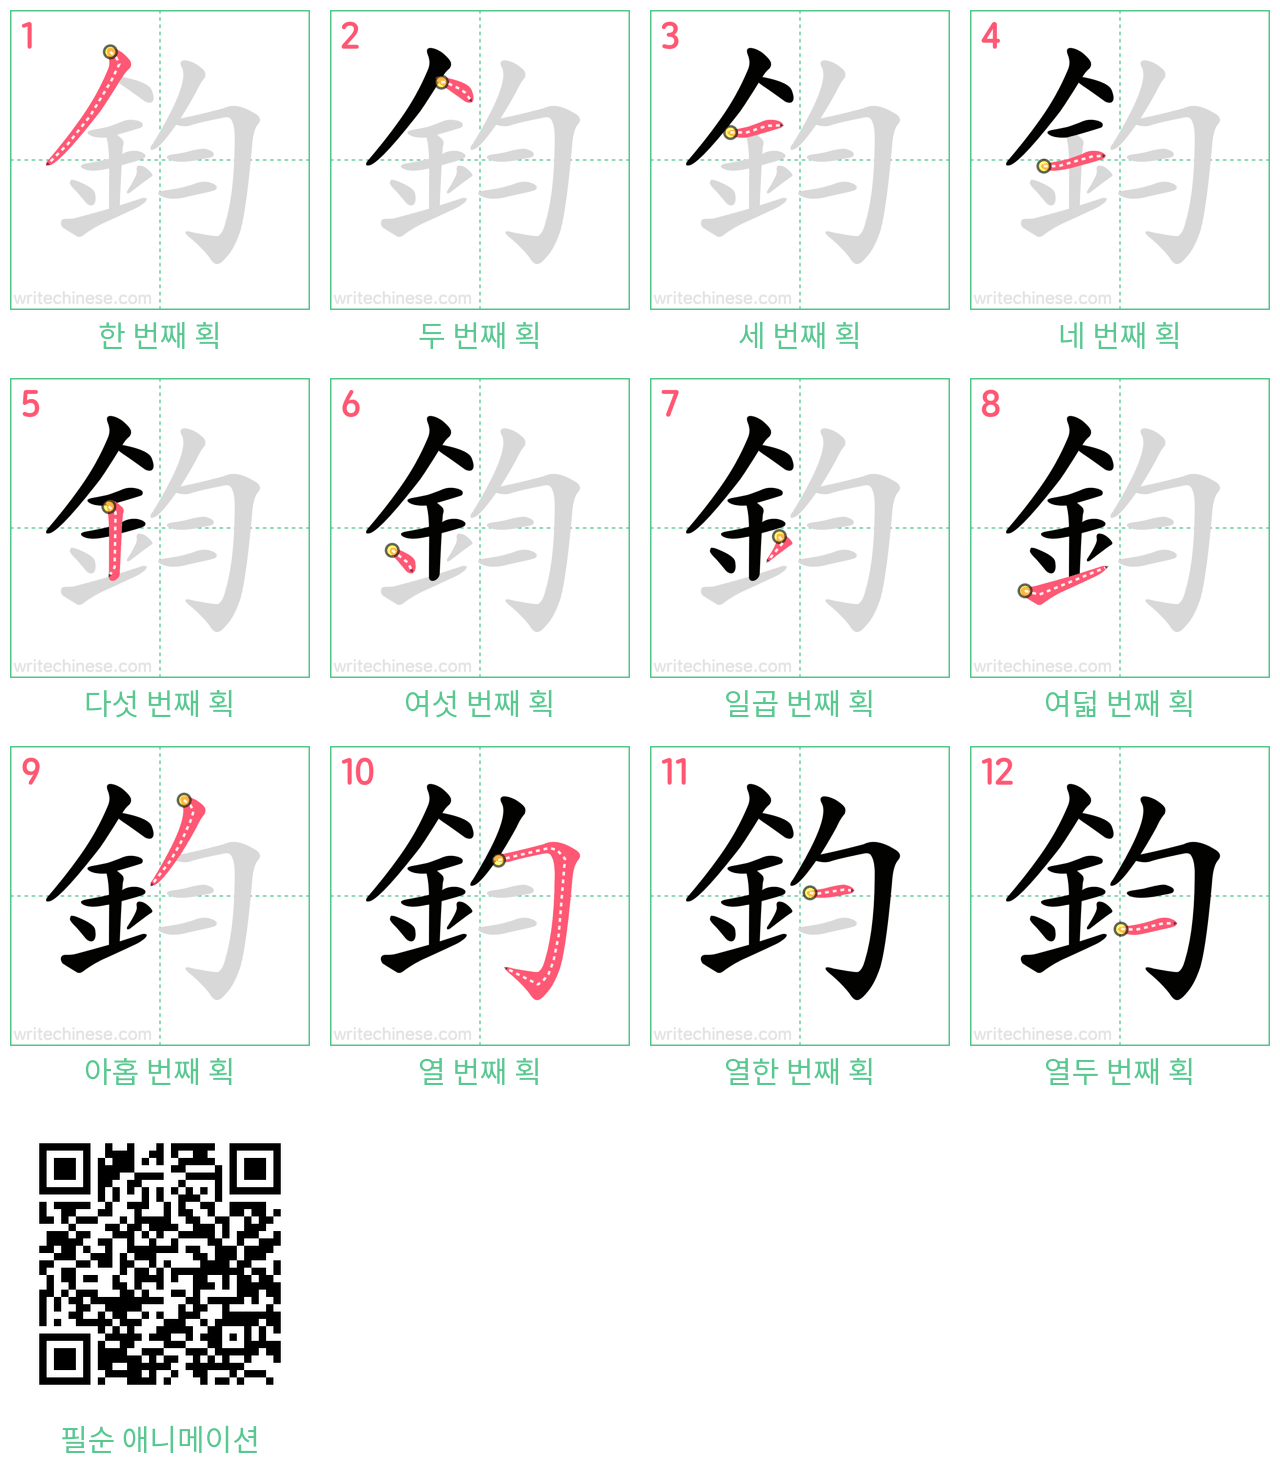 鈞 step-by-step stroke order diagrams